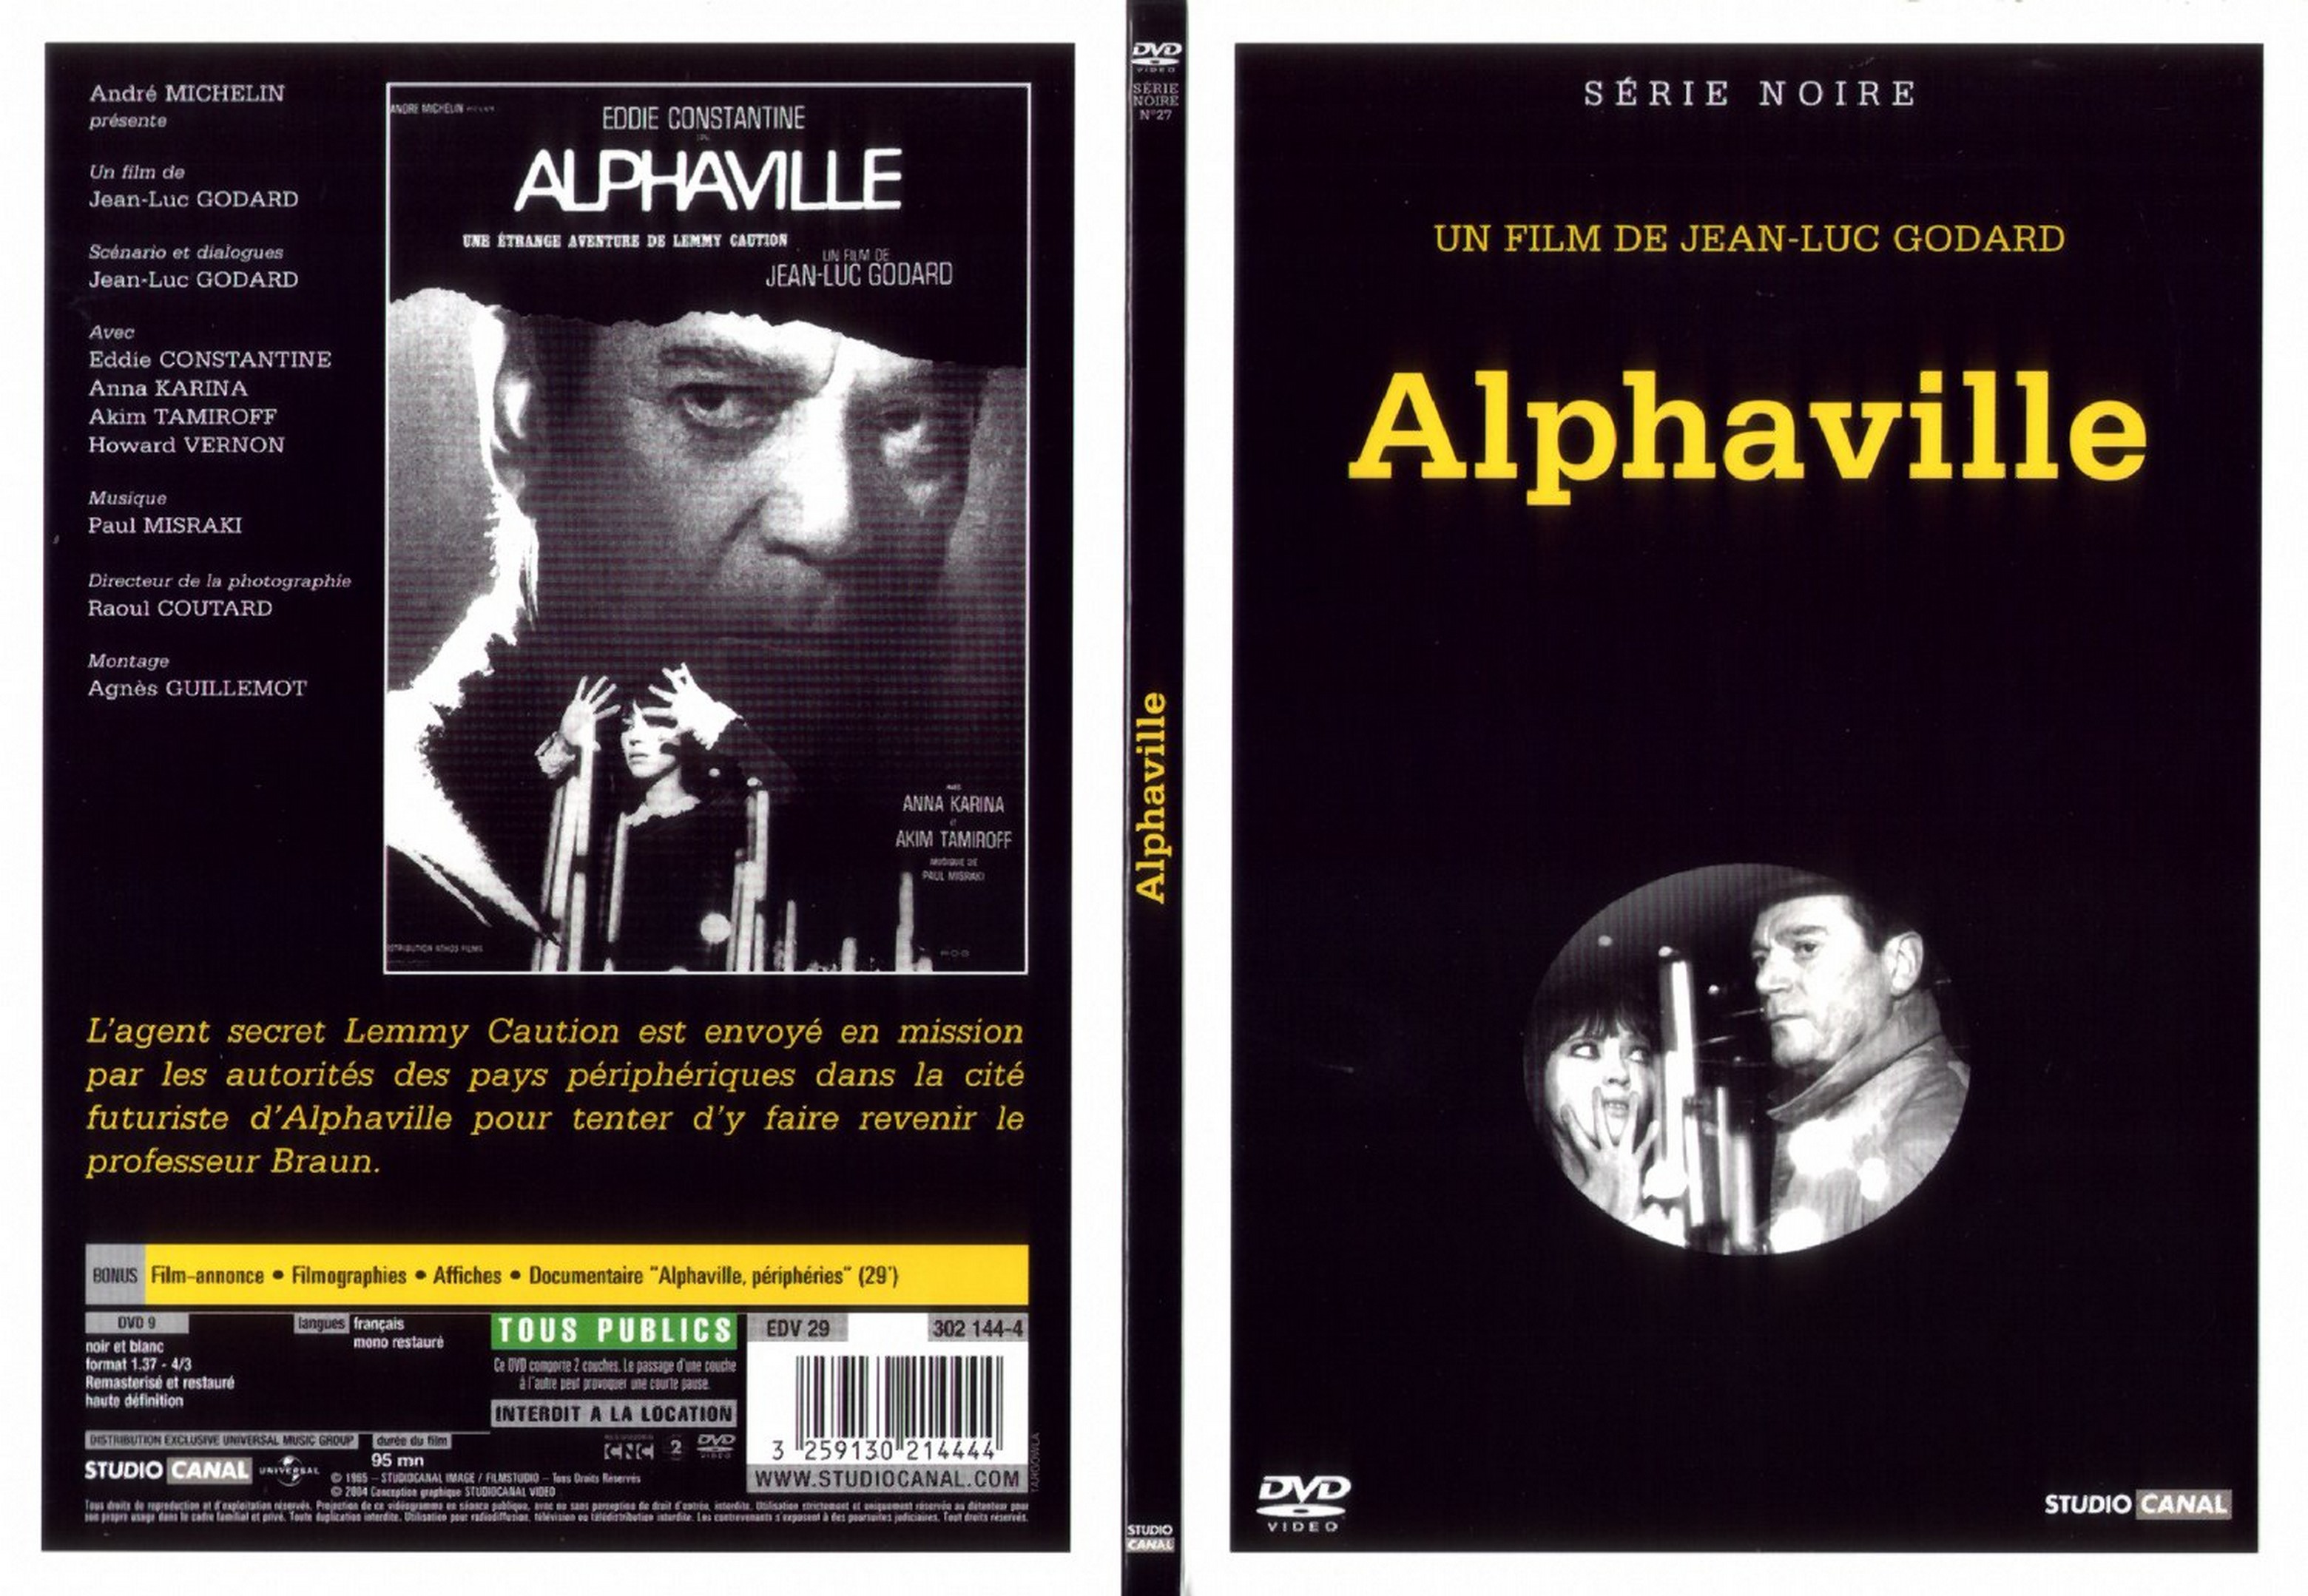 Jaquette DVD Alphaville v2